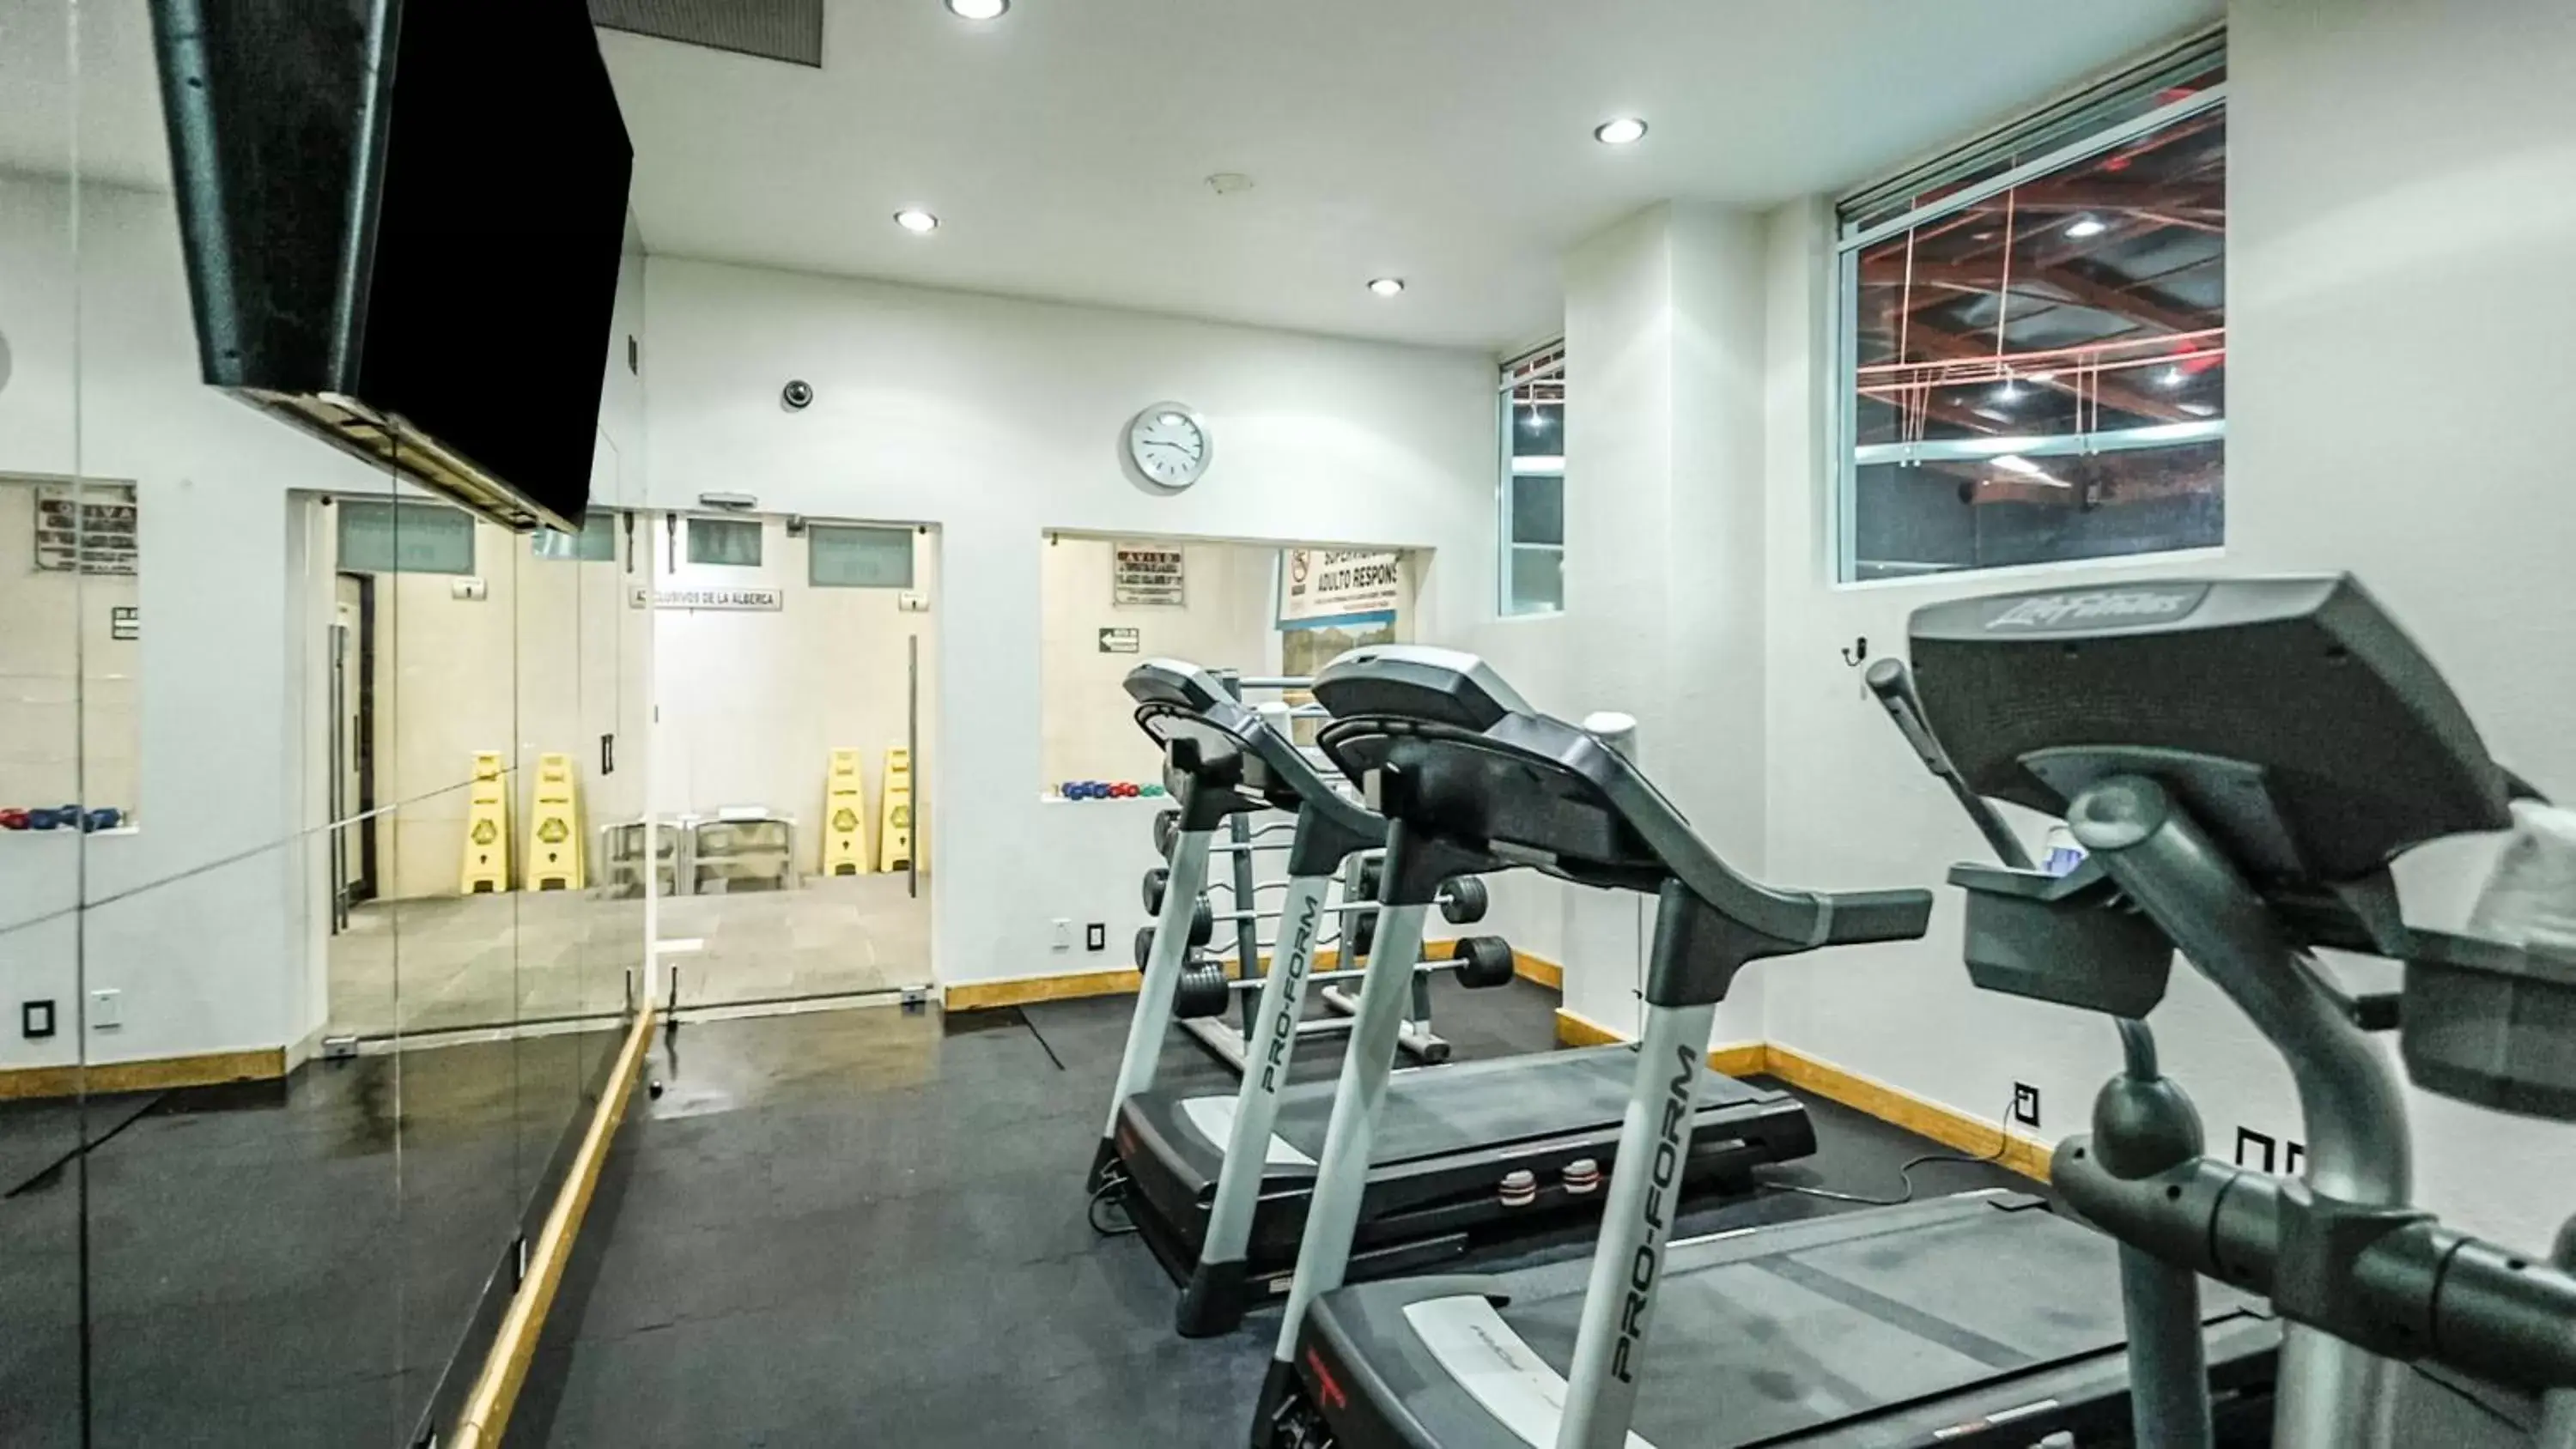 Fitness centre/facilities, Fitness Center/Facilities in Suites Inn la Muralla Hotel & Spa